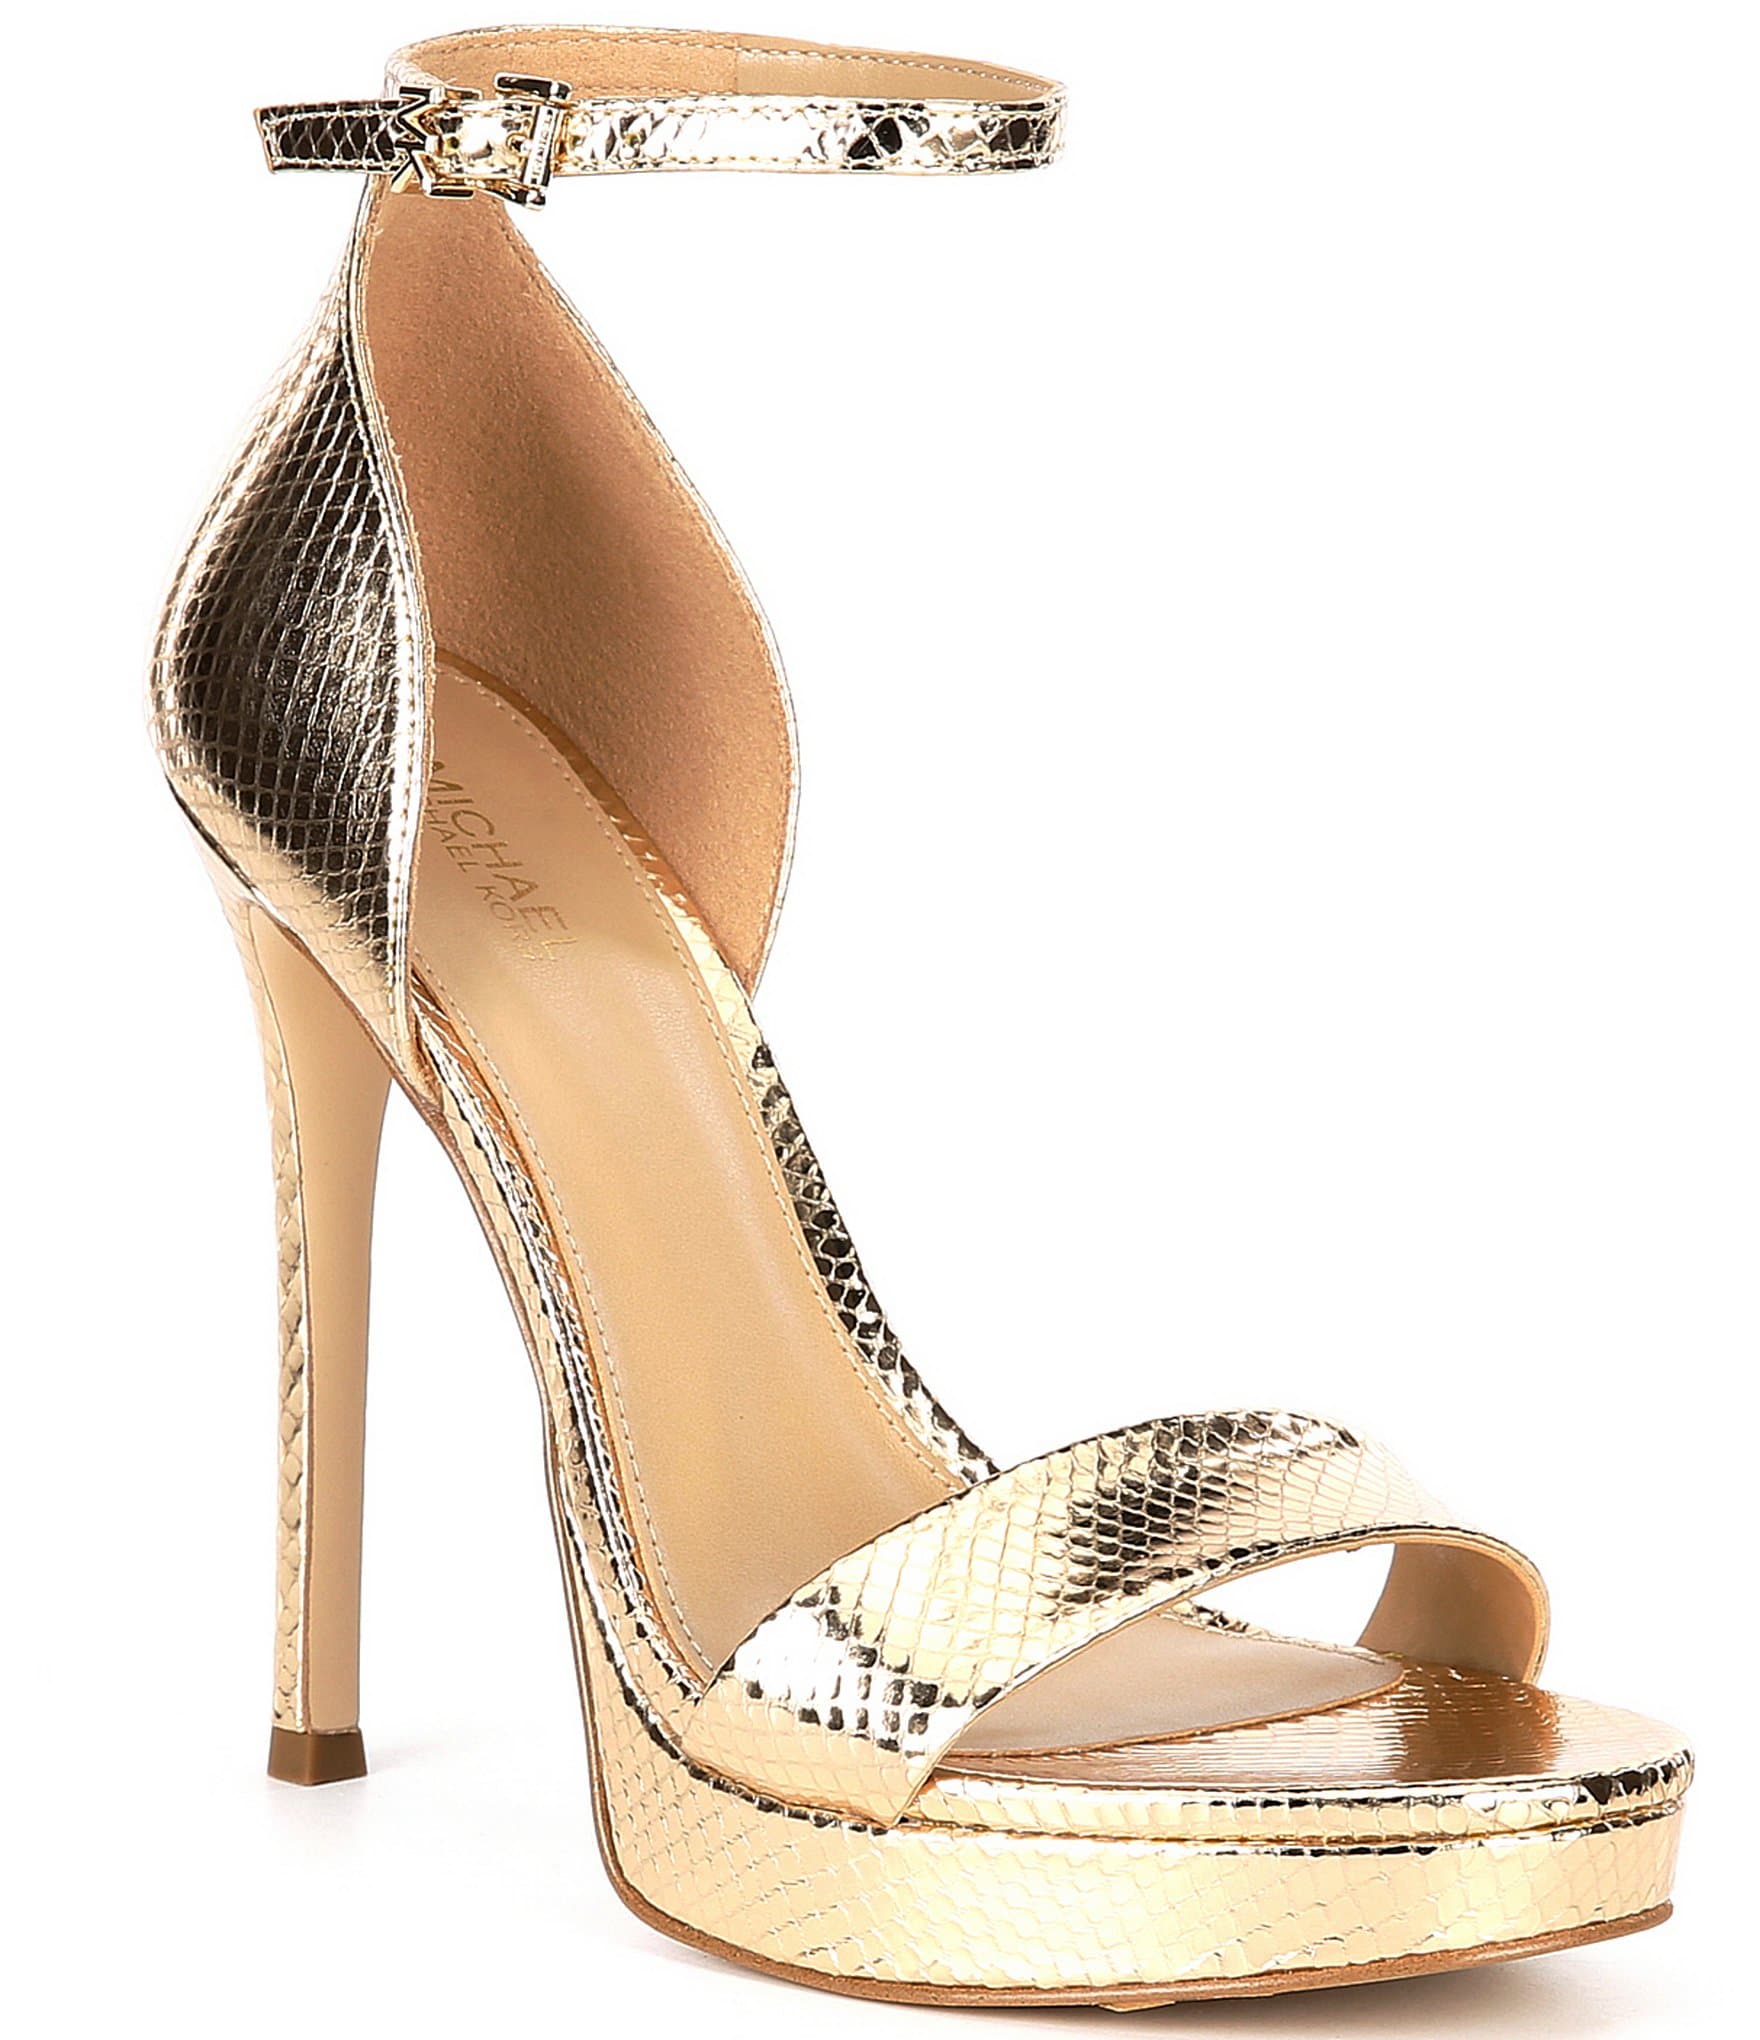 MICHAEL KORS Maxwell Wedge Sandal  Giày Đế Cói Màu Gold  Size 65M   POTATODO SHOP